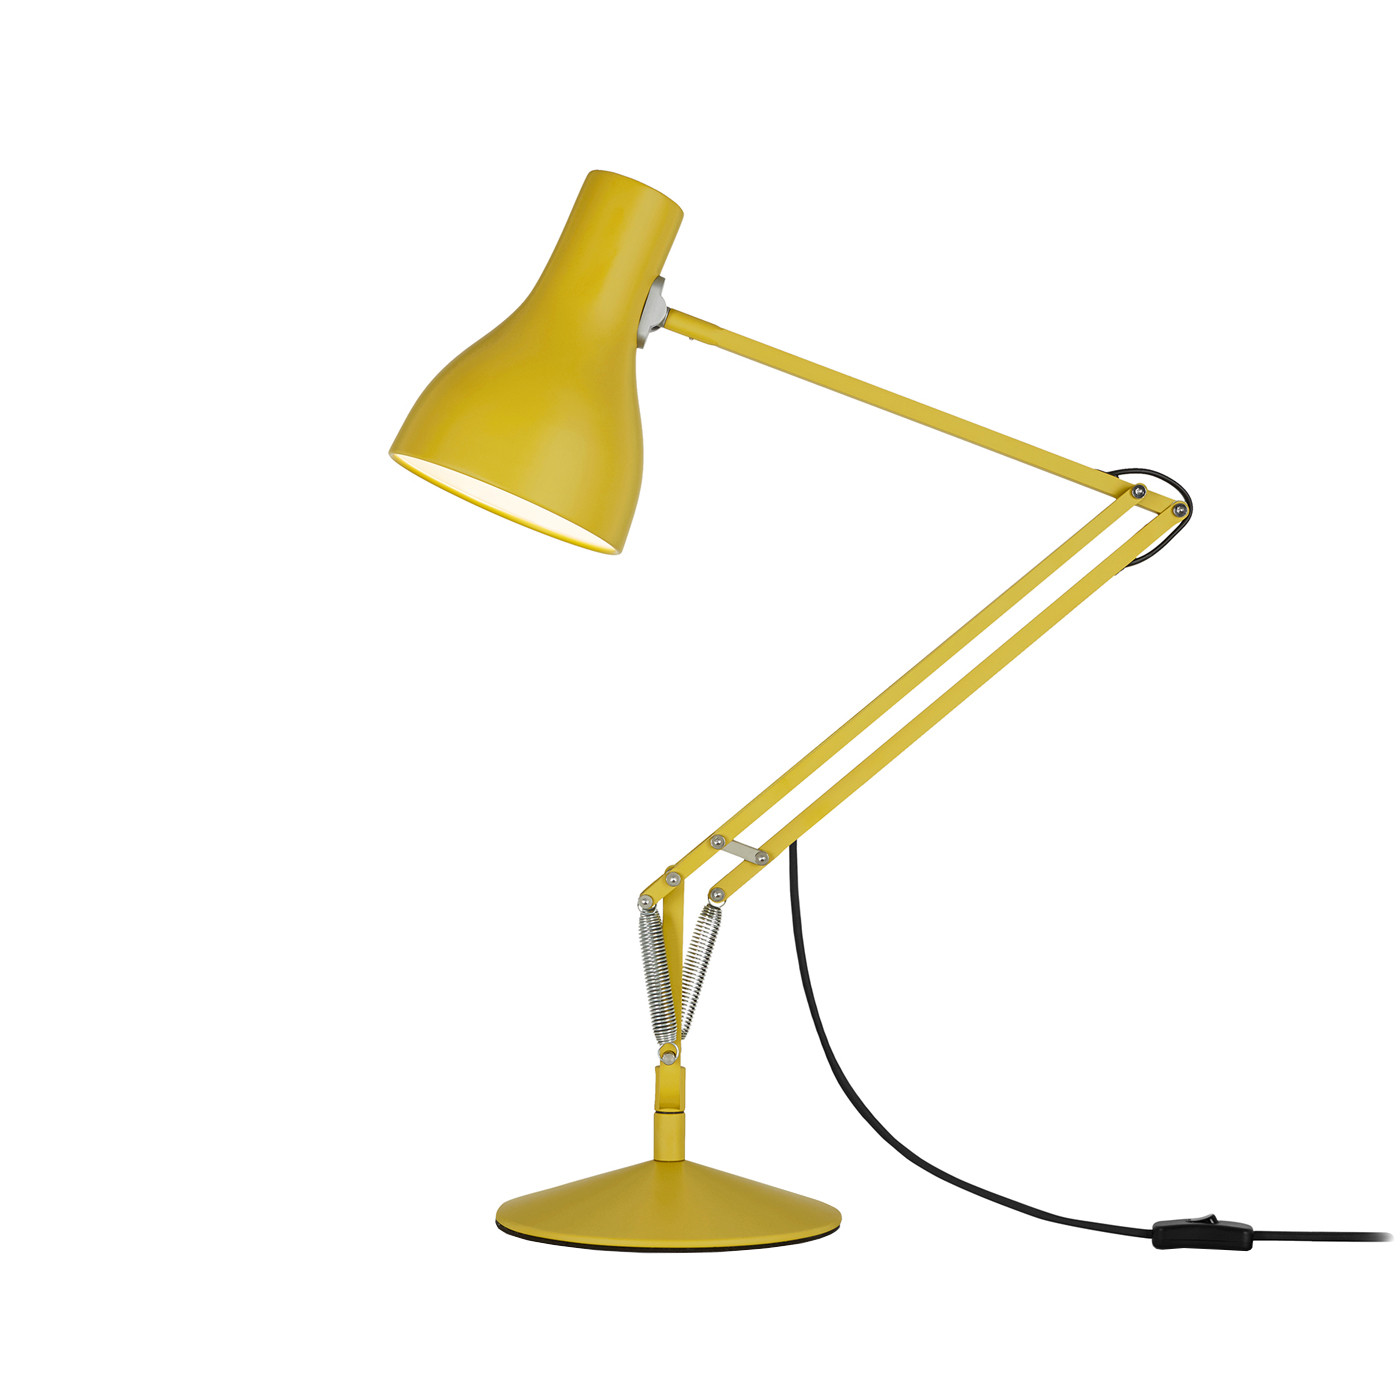 Anglepoise Type 75 Desk Lamp Margaret Howell Edition